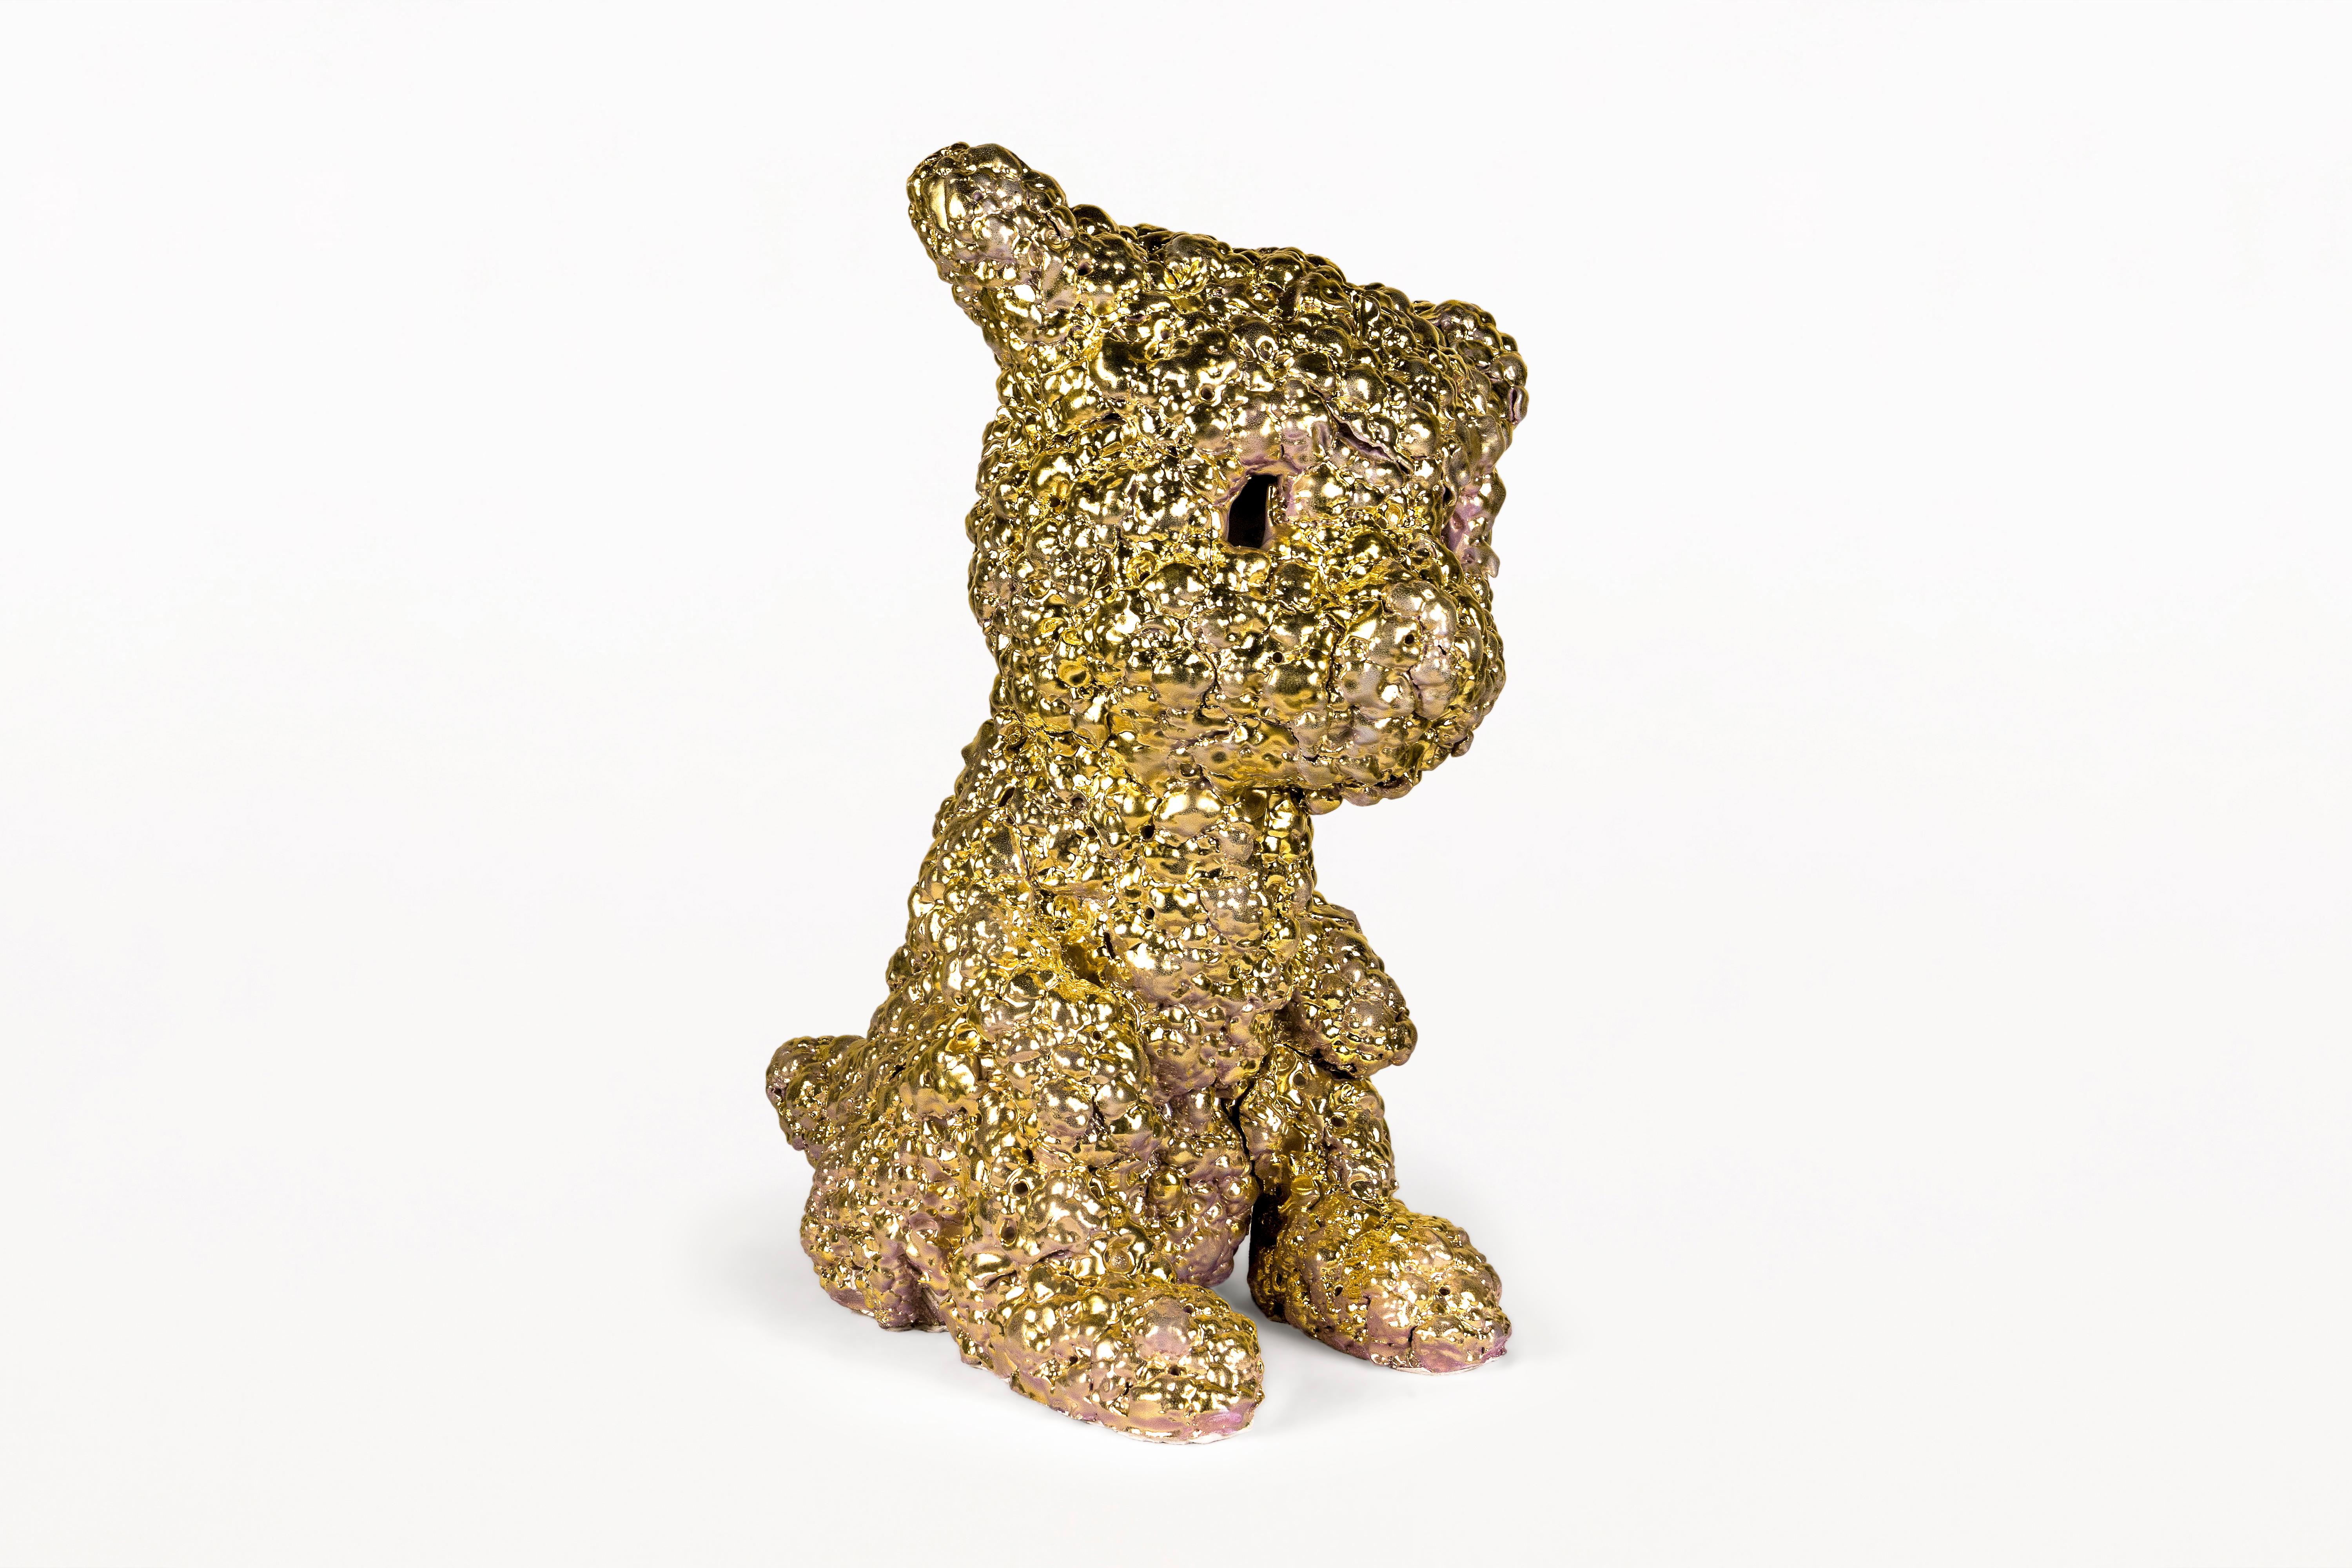 Goldener Hund - Skulptur von Kim Simonsson. 
Hergestellt aus Keramik. 
Ca. 2020, Finnland. 
Einzigartiges Stück. 
Sehr guter Zustand. 
Kim Simonsson (1974 Helsinki) ist ein finnischer bildender Künstler. Im Jahr 2000 schloss er sein Kunststudium an